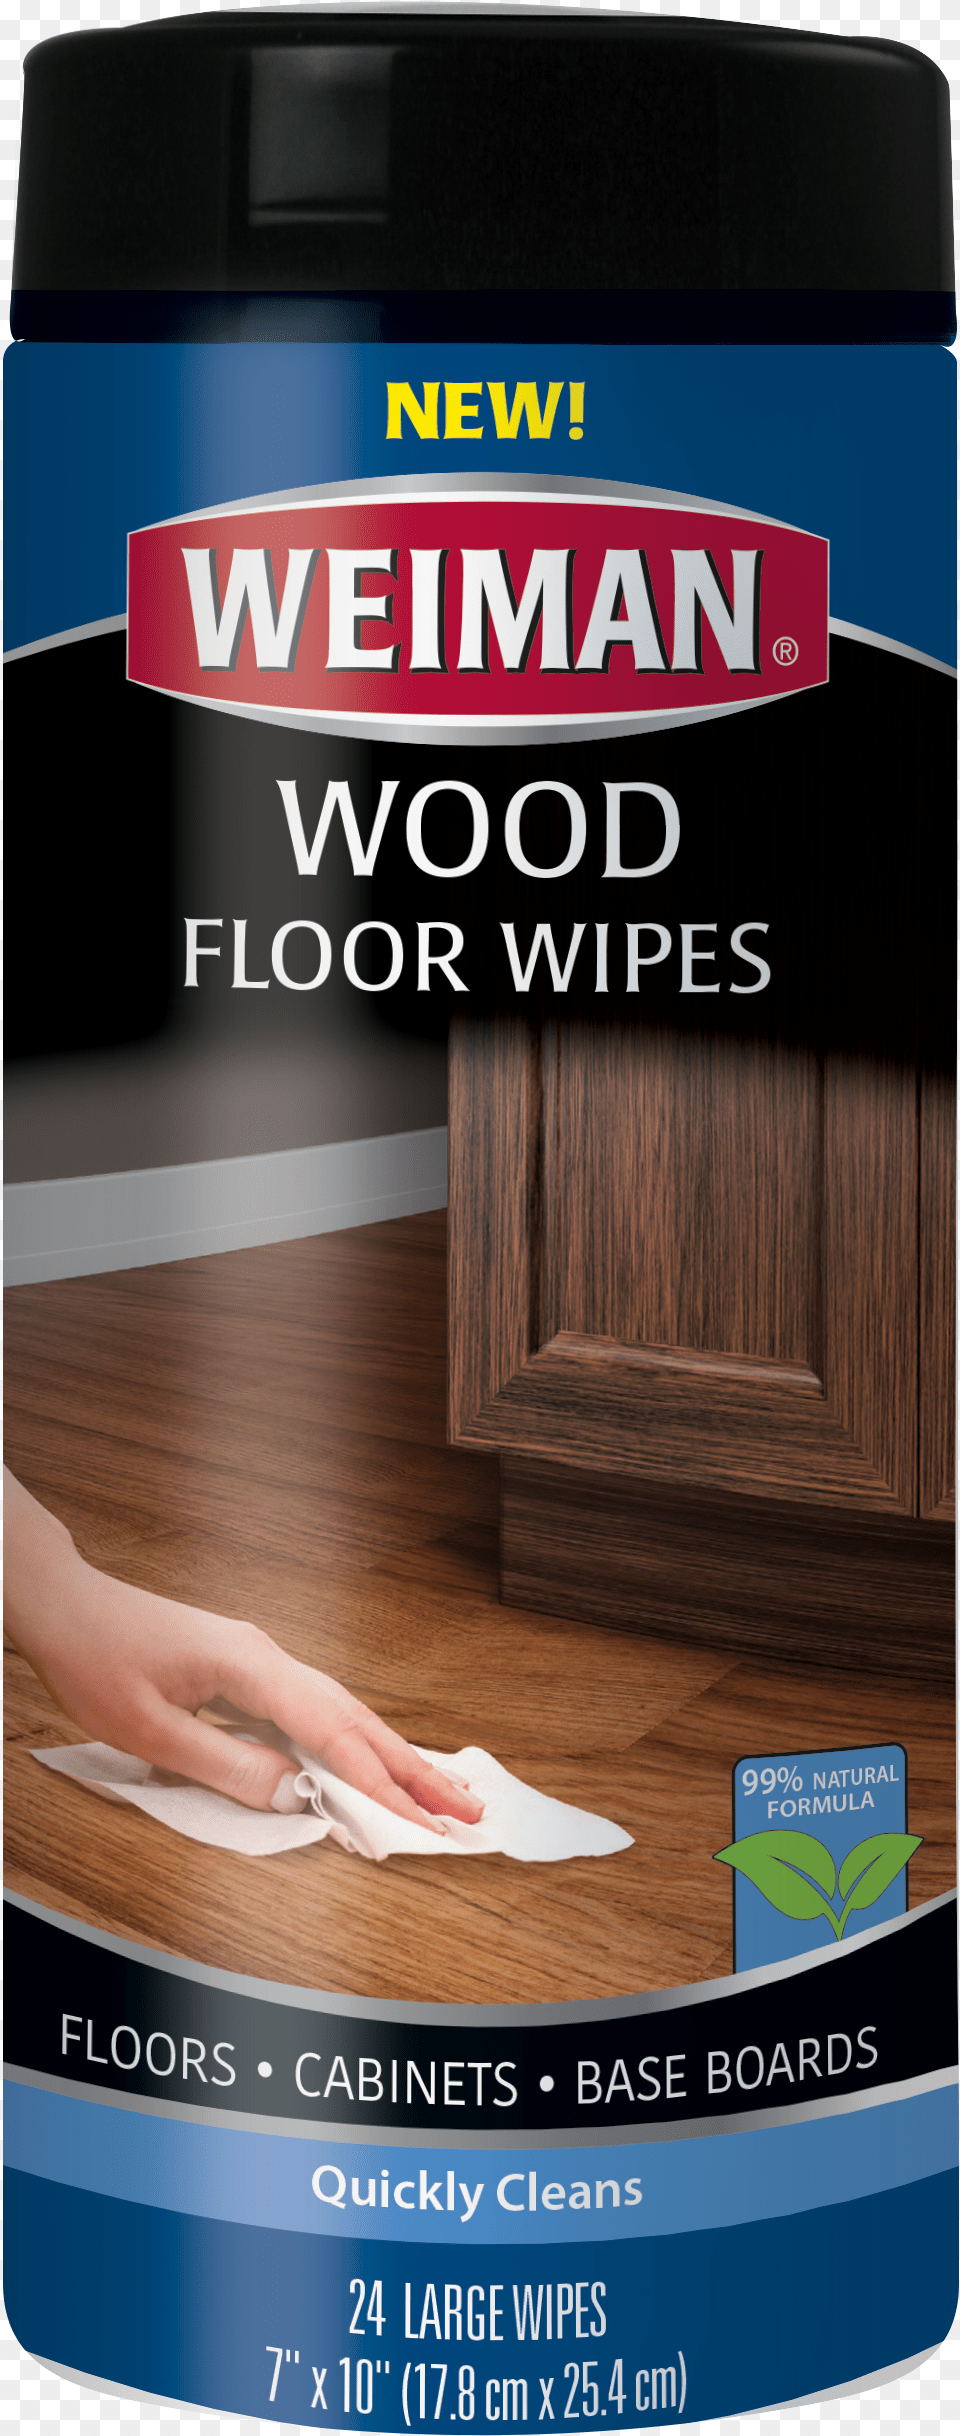 Wood Floor Wipes, Indoors, Interior Design, Advertisement, Hardwood Png